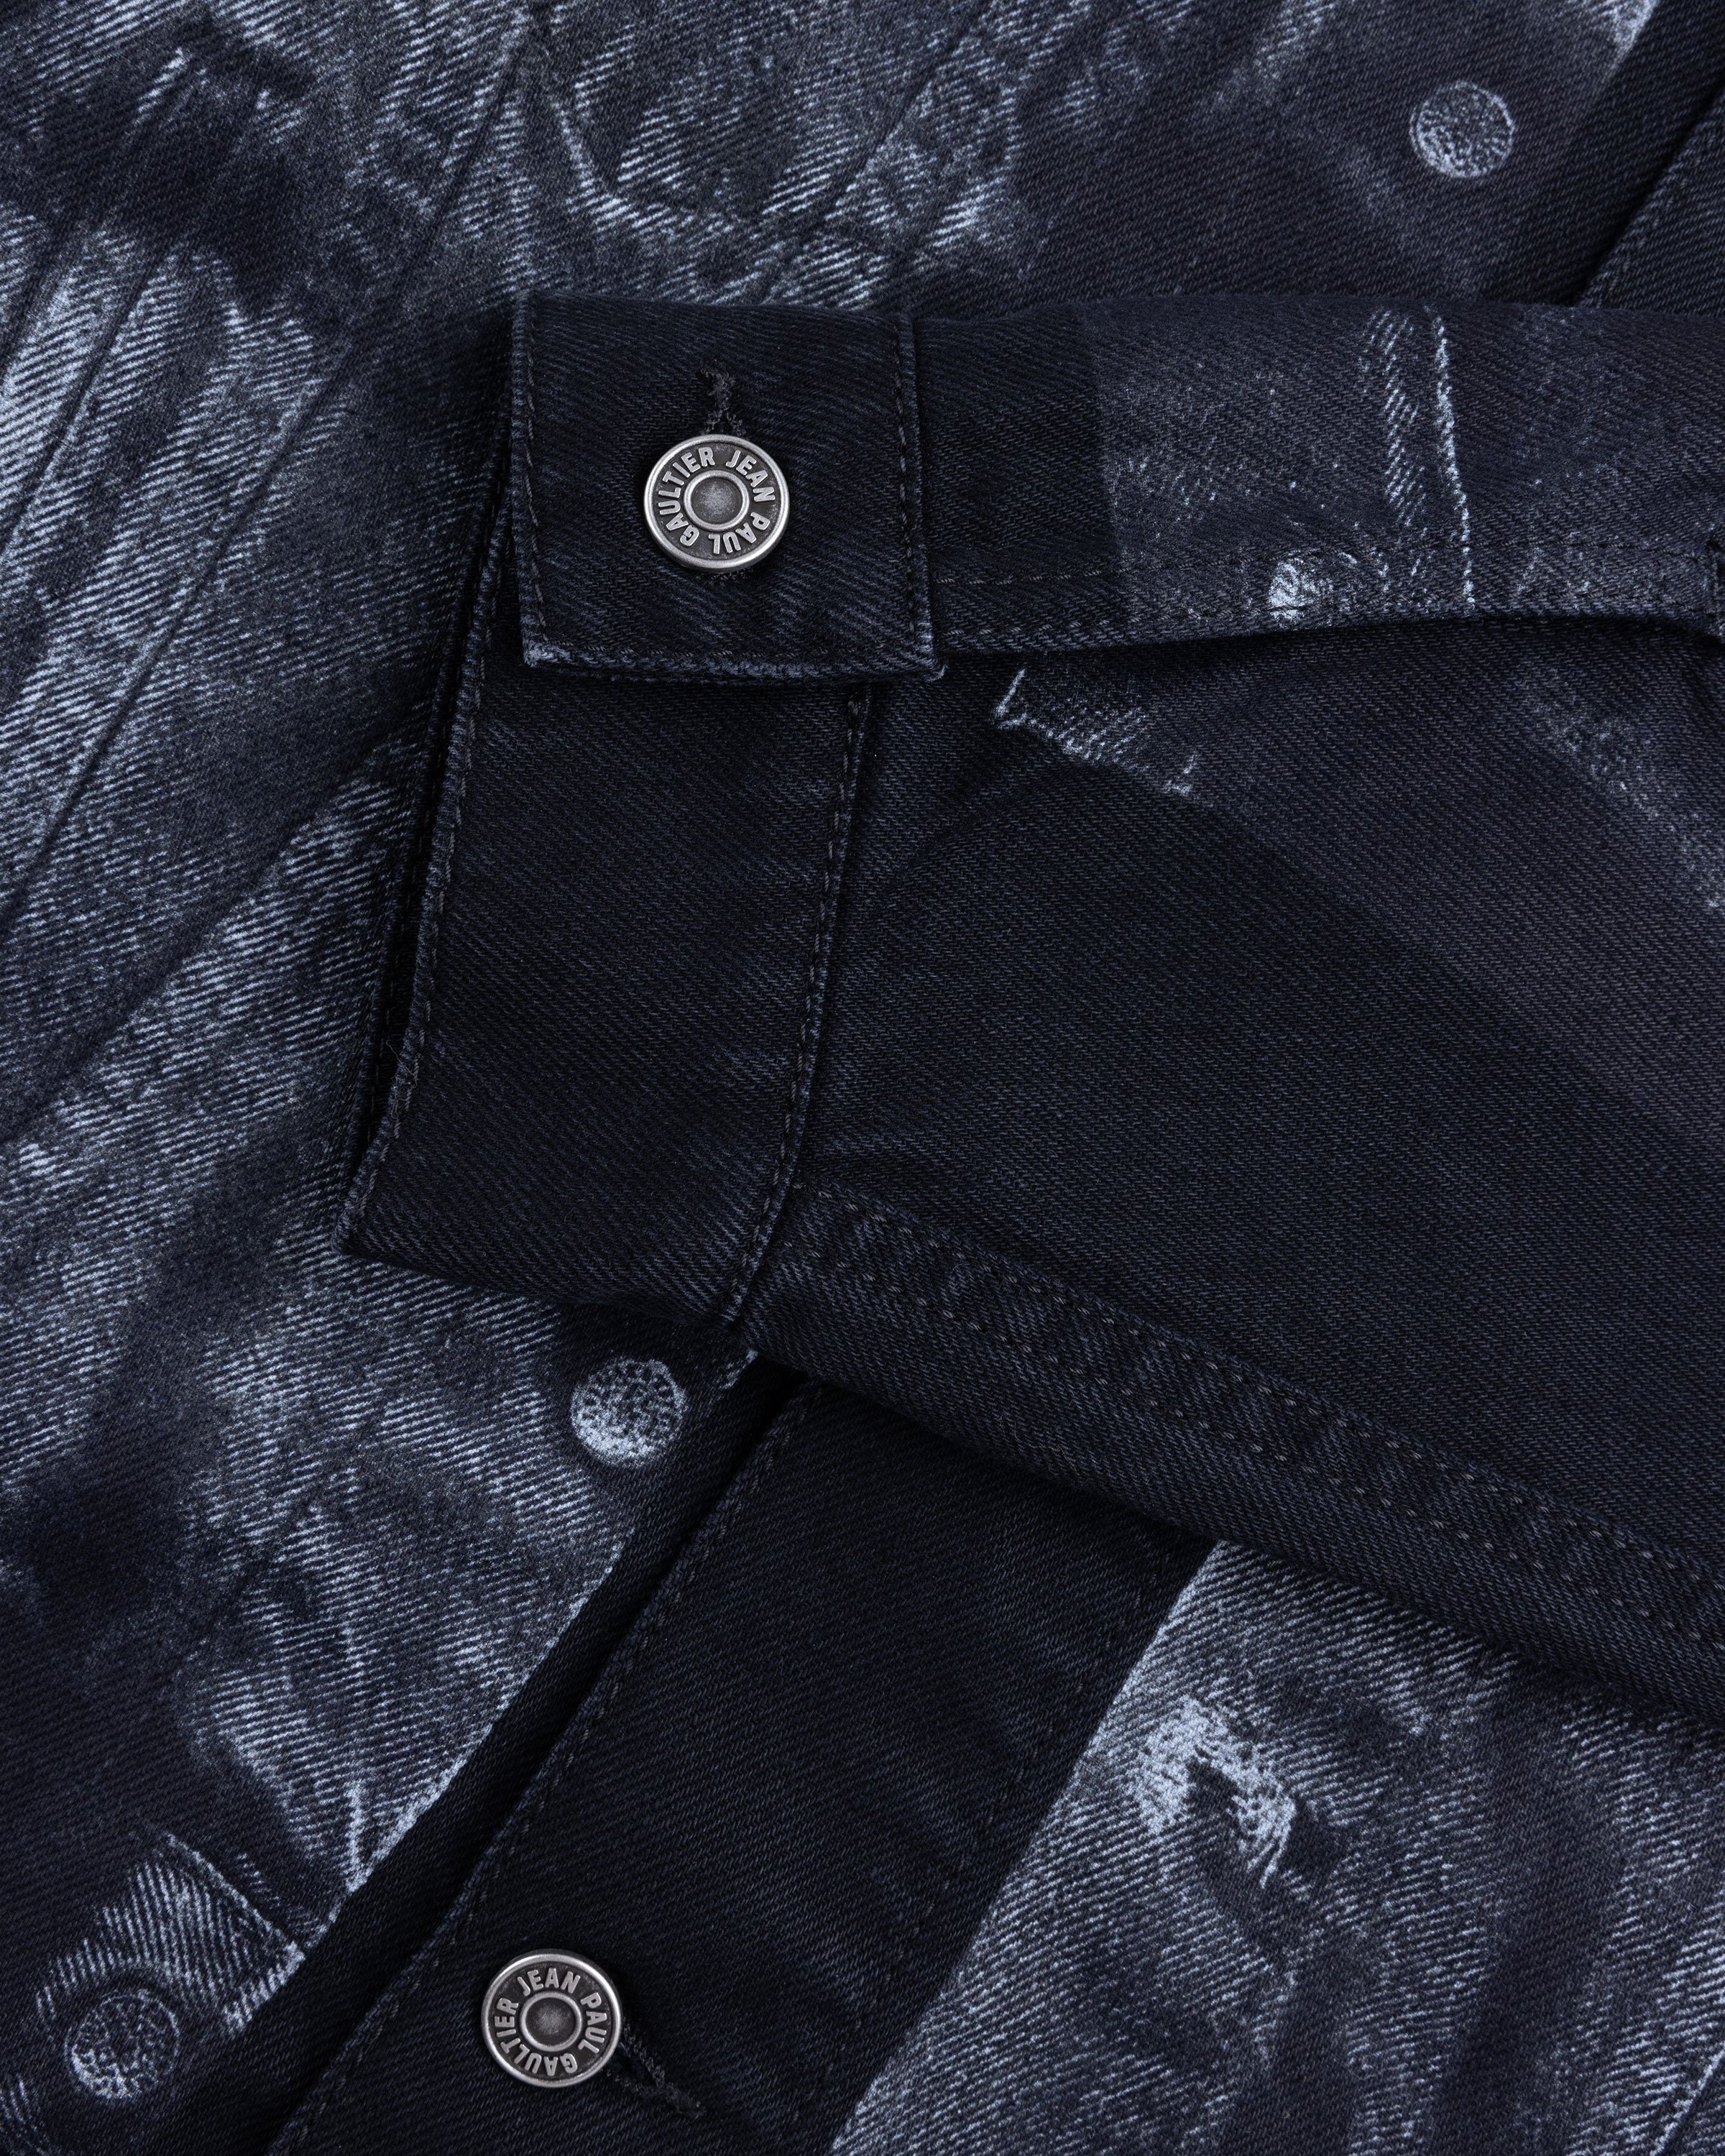 Jean Paul Gaultier - Trompe L'œil Denim Jacket Black - Clothing - Black - Image 7